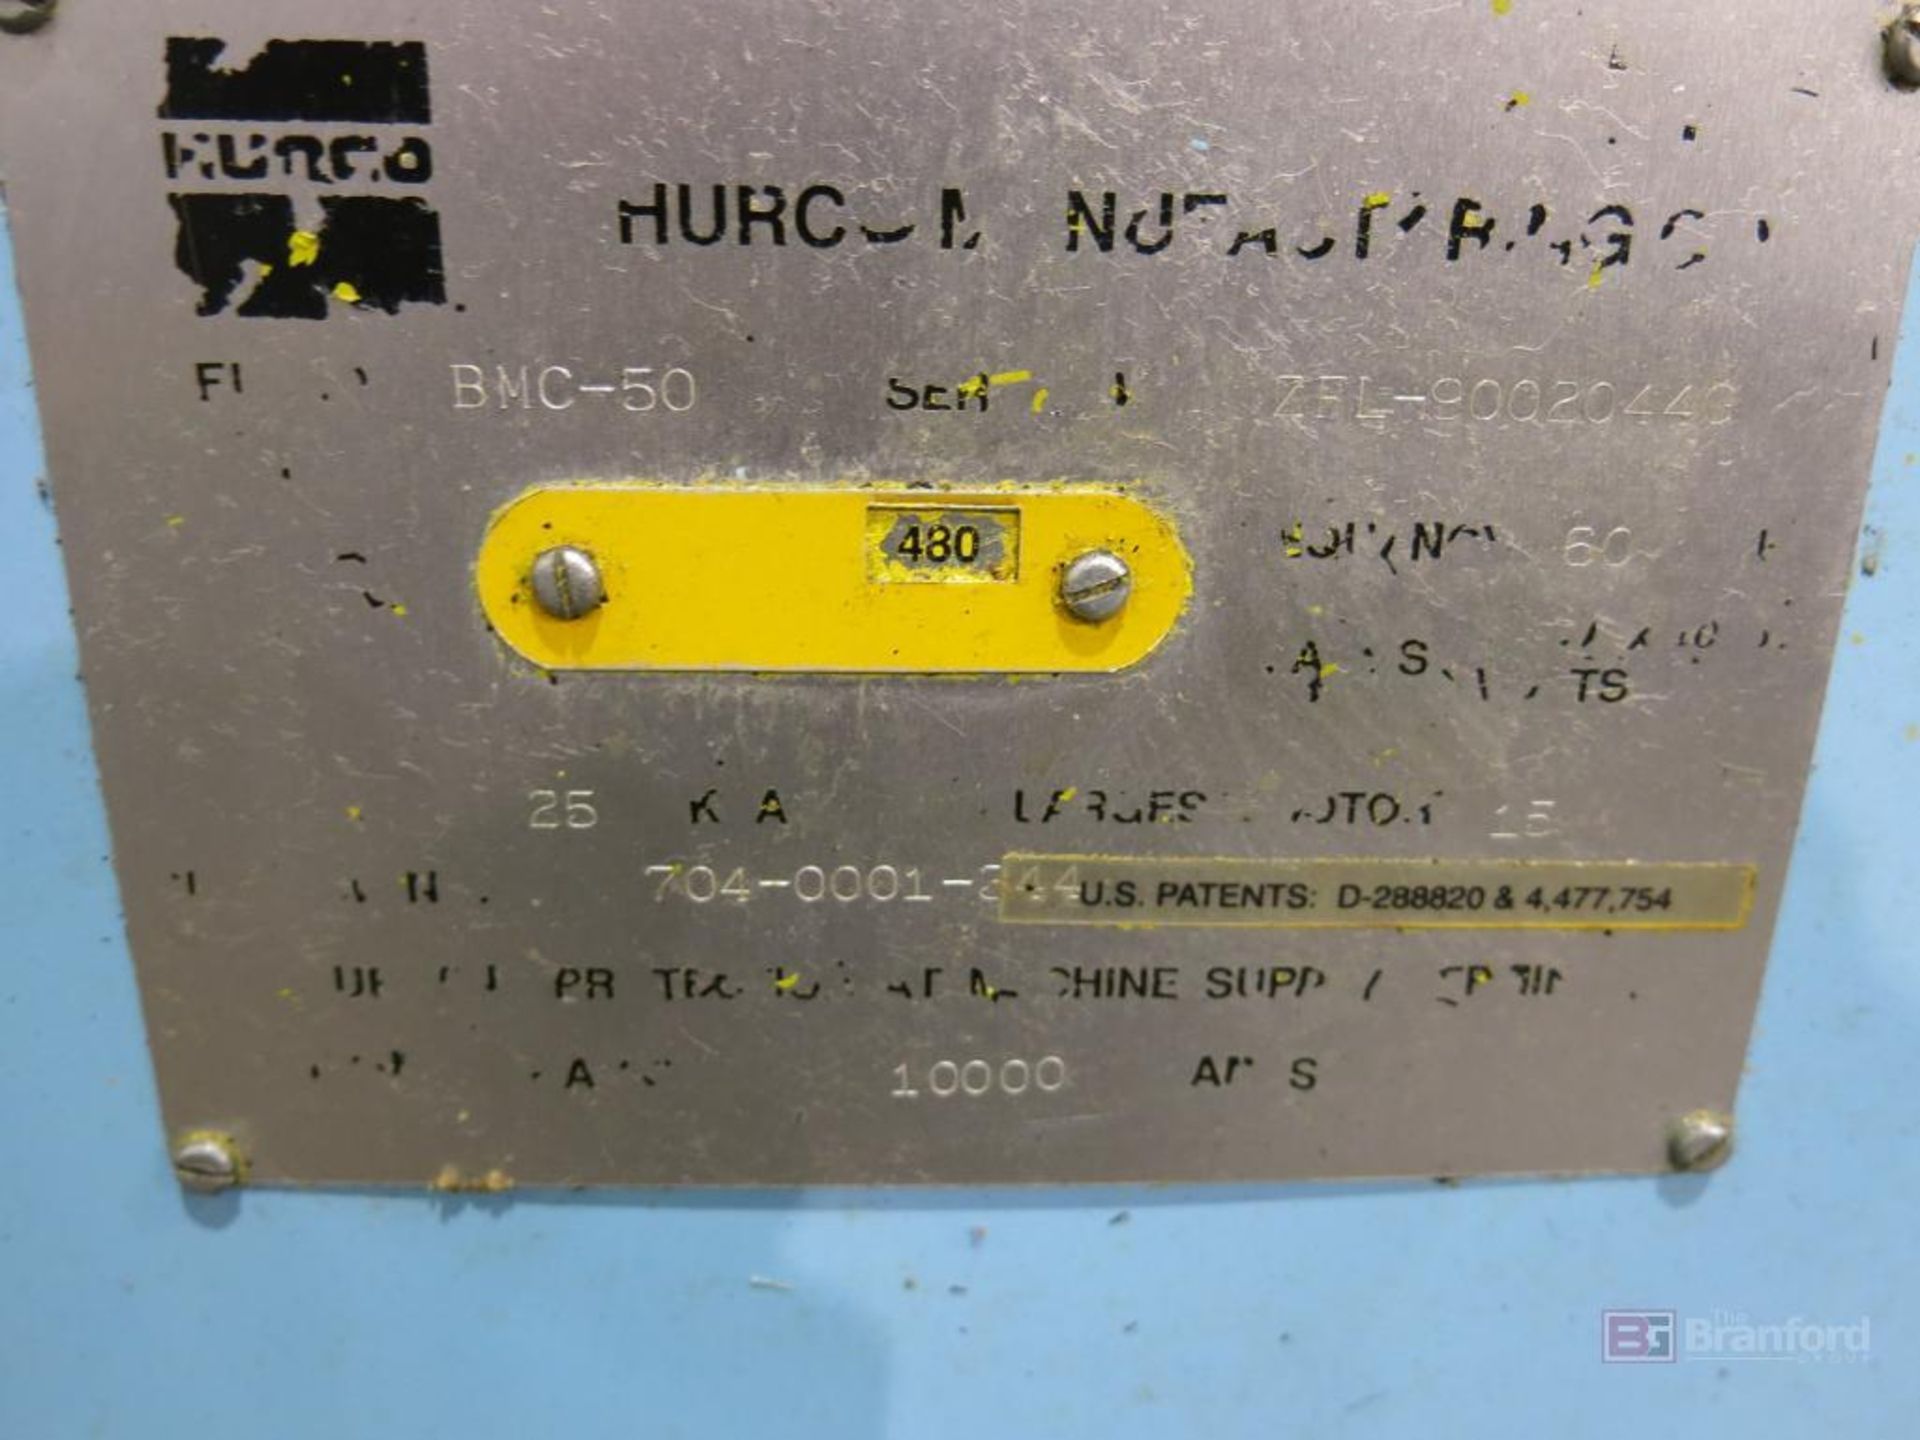 Hurco VMC-50 CNC Machining Center w/ Ultramax 3 Controls - Image 5 of 5